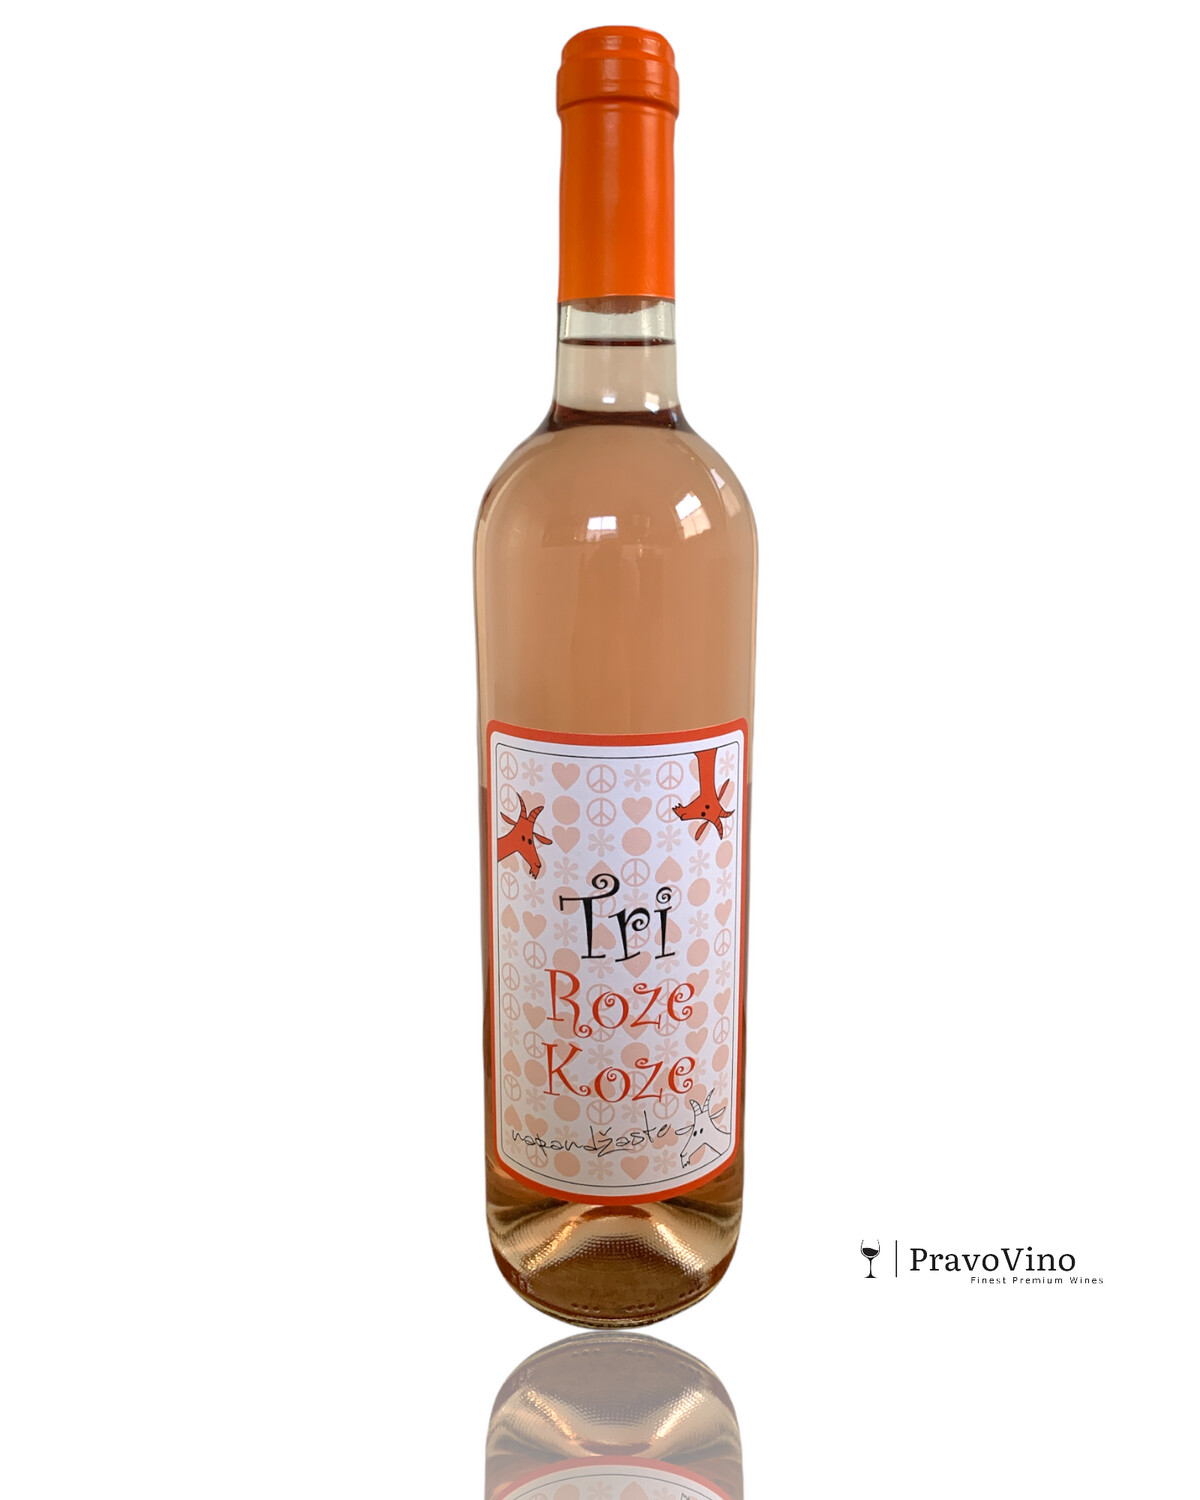 Tri Roze Koze - Erdevik Winery